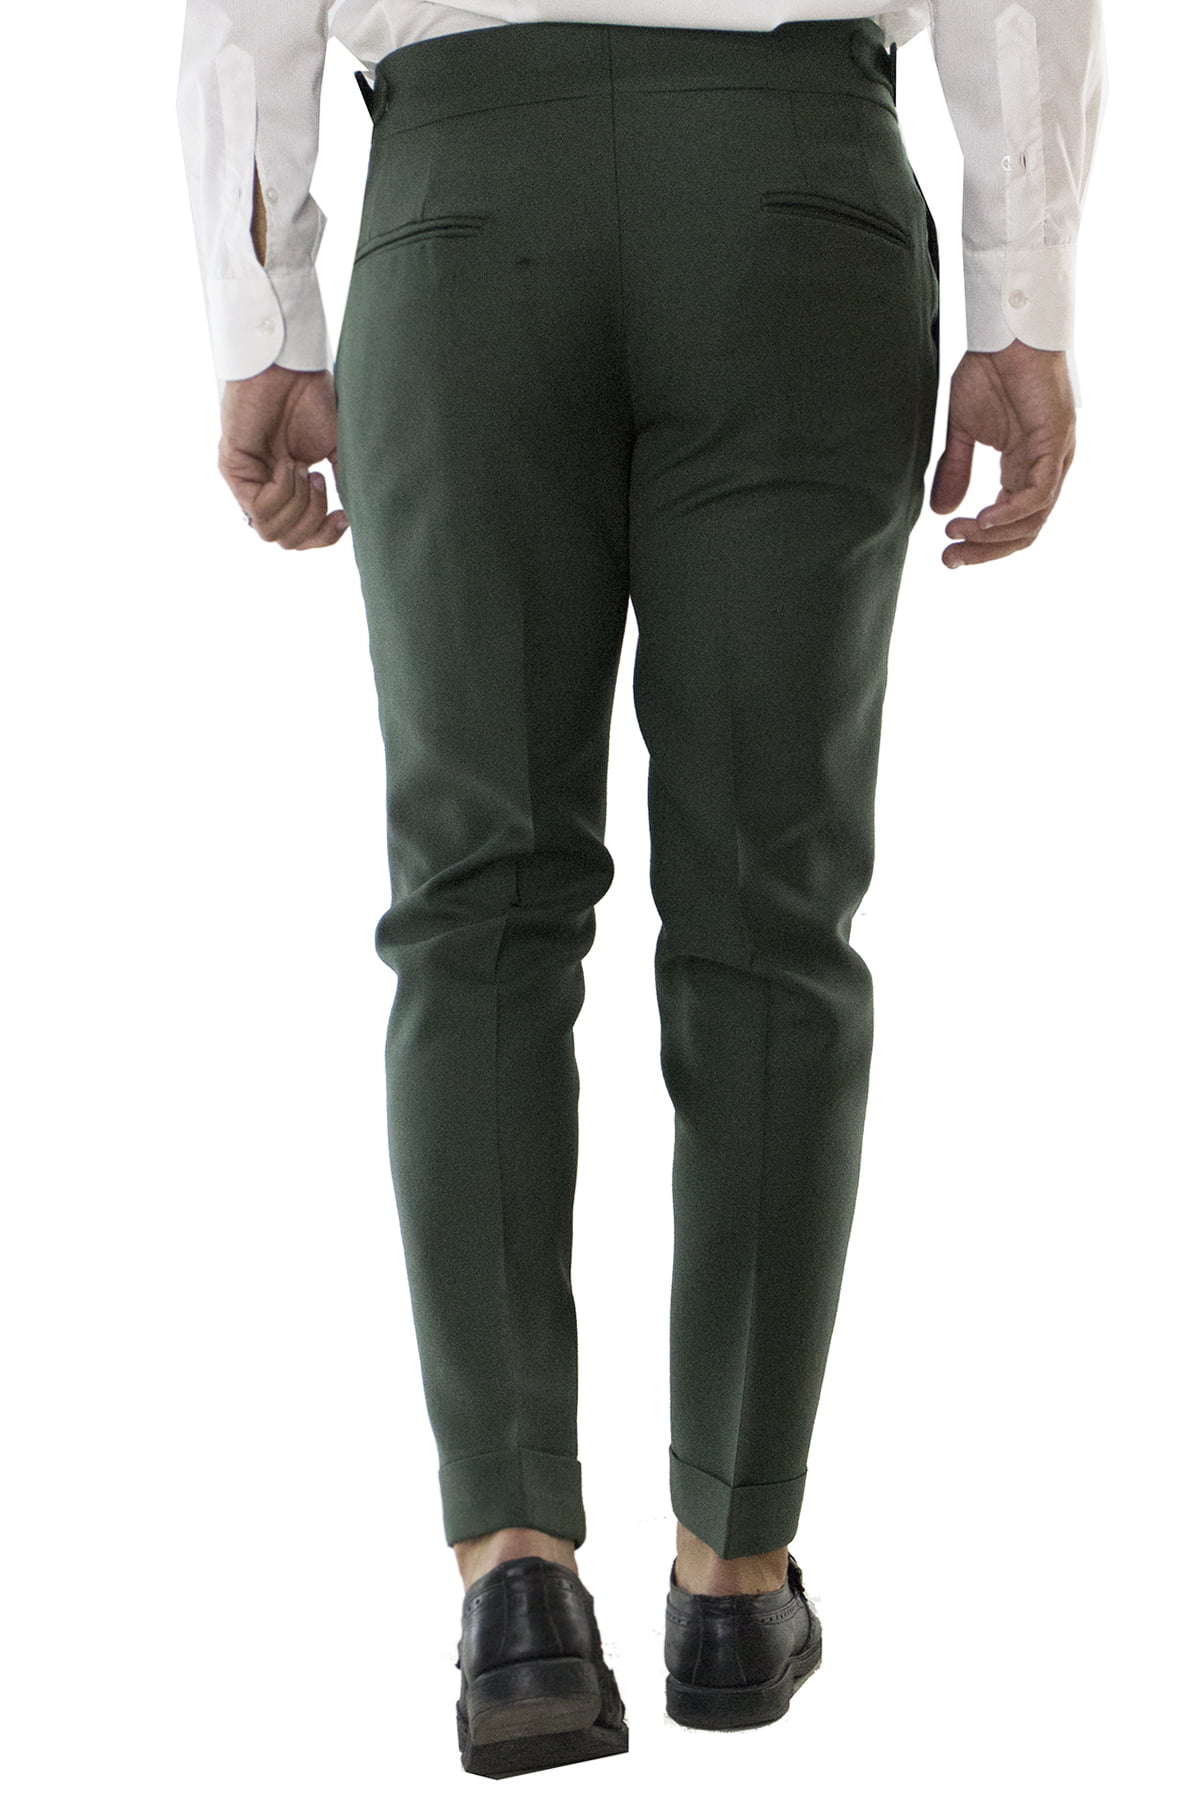 Pantalone uomo militare in lana tinta unita vita alta con pinces fibbie laterali e risvolto 4cm